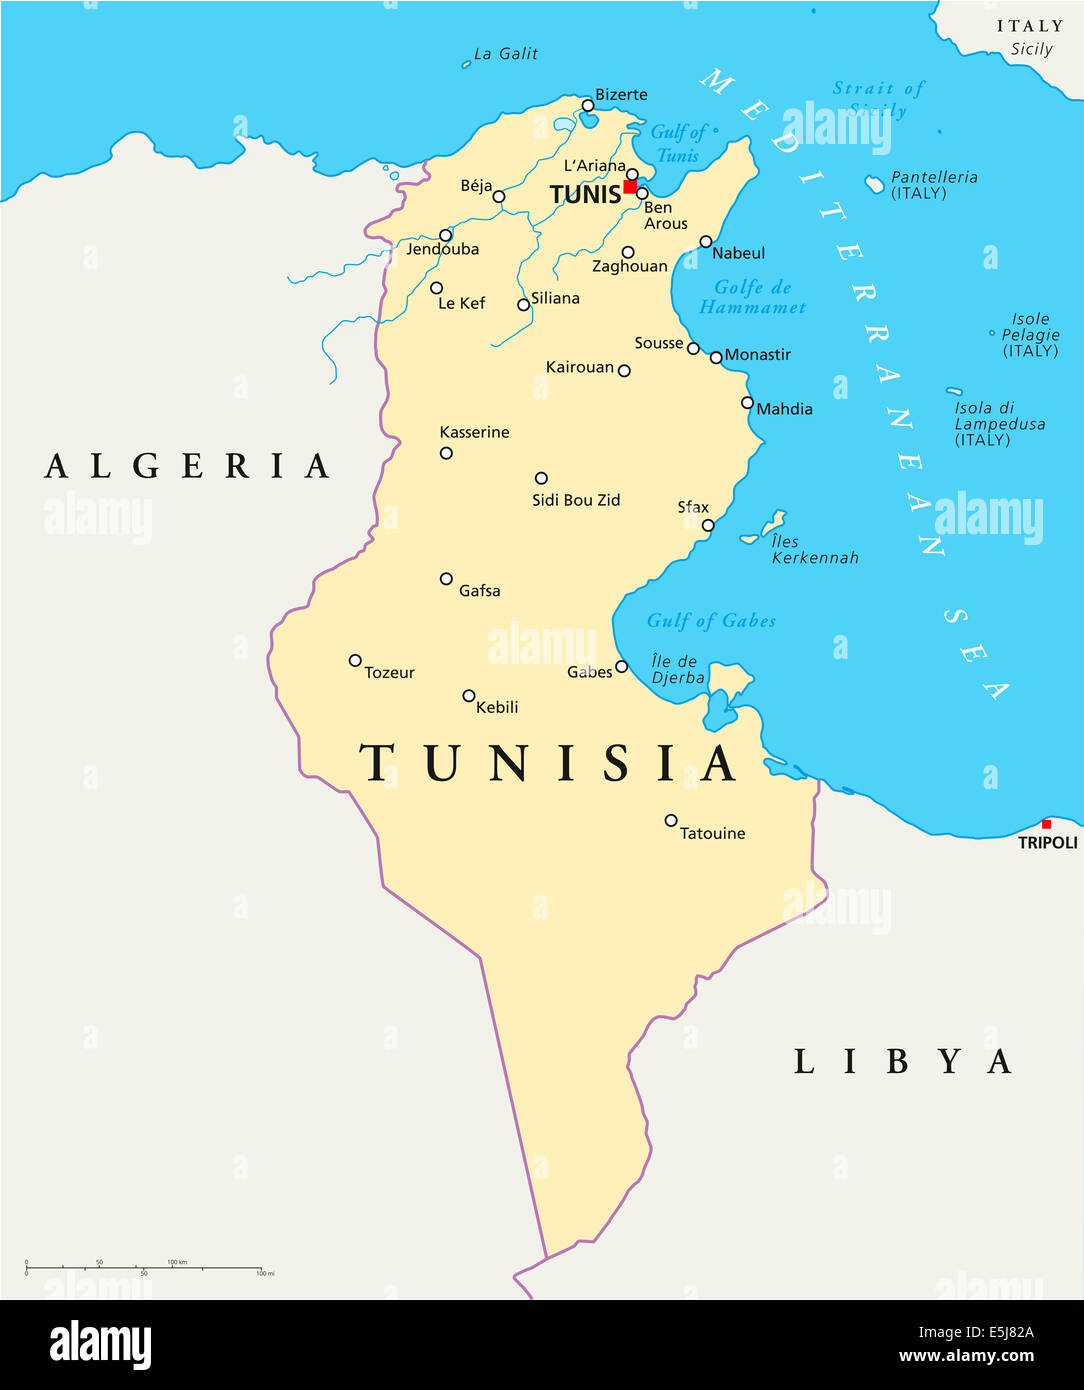 Túnez Mapa Político con capital de Túnez, las fronteras nacionales, la mayoría de las ciudades importantes, ríos y lagos con rótulos en Inglés. Foto de stock